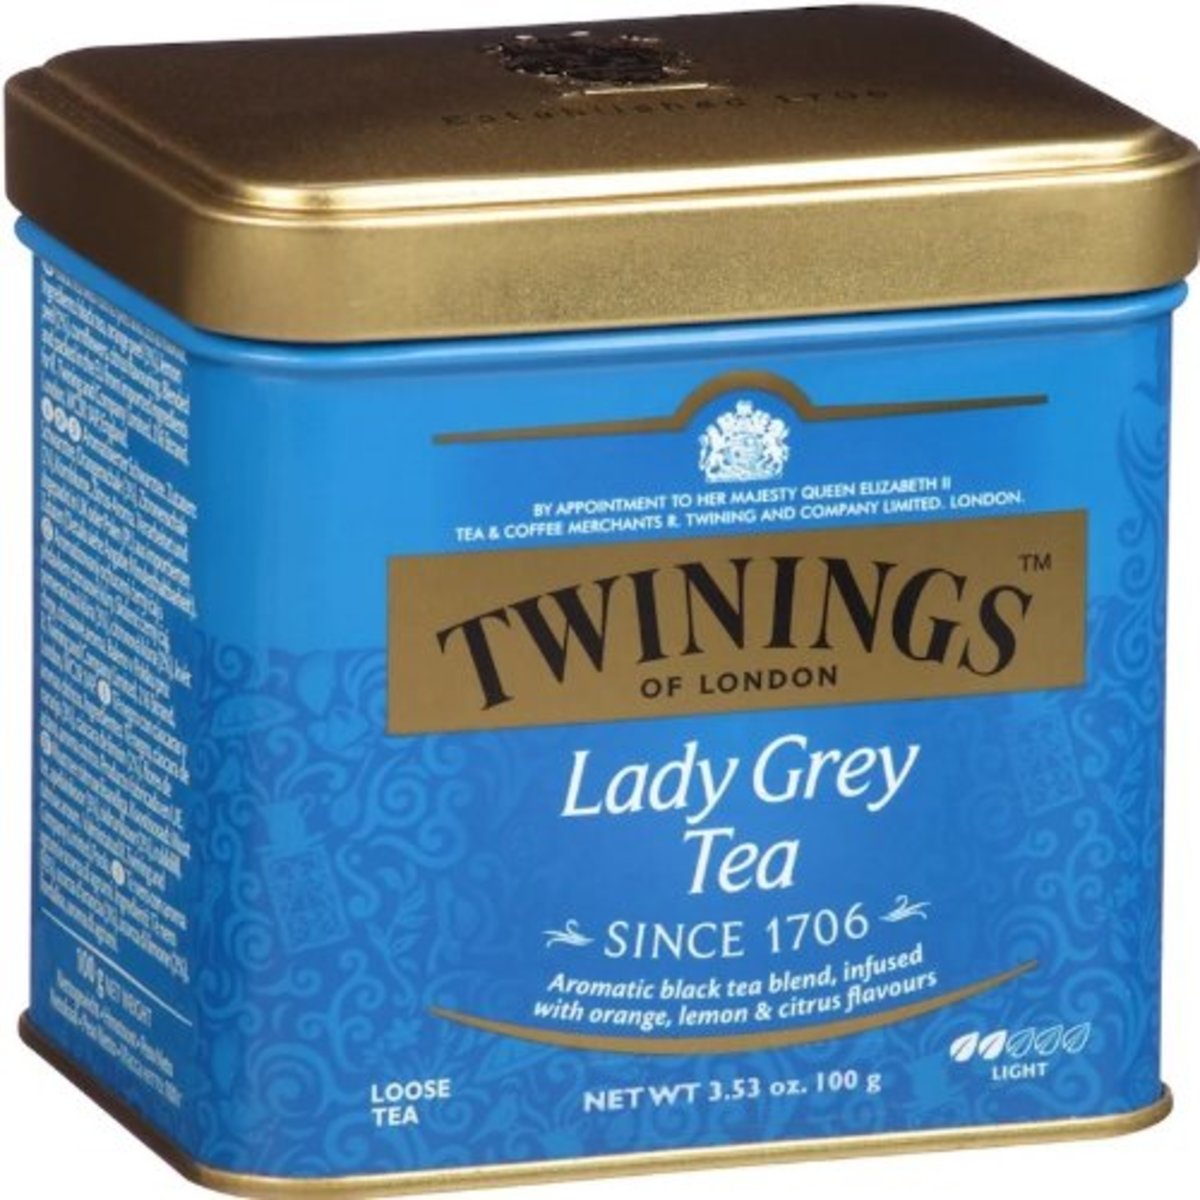 英國經典格雷仕女散裝茶葉-100克 經典版本-紅茶 -- 加入橙皮 檸檬皮精華- - 平行進口